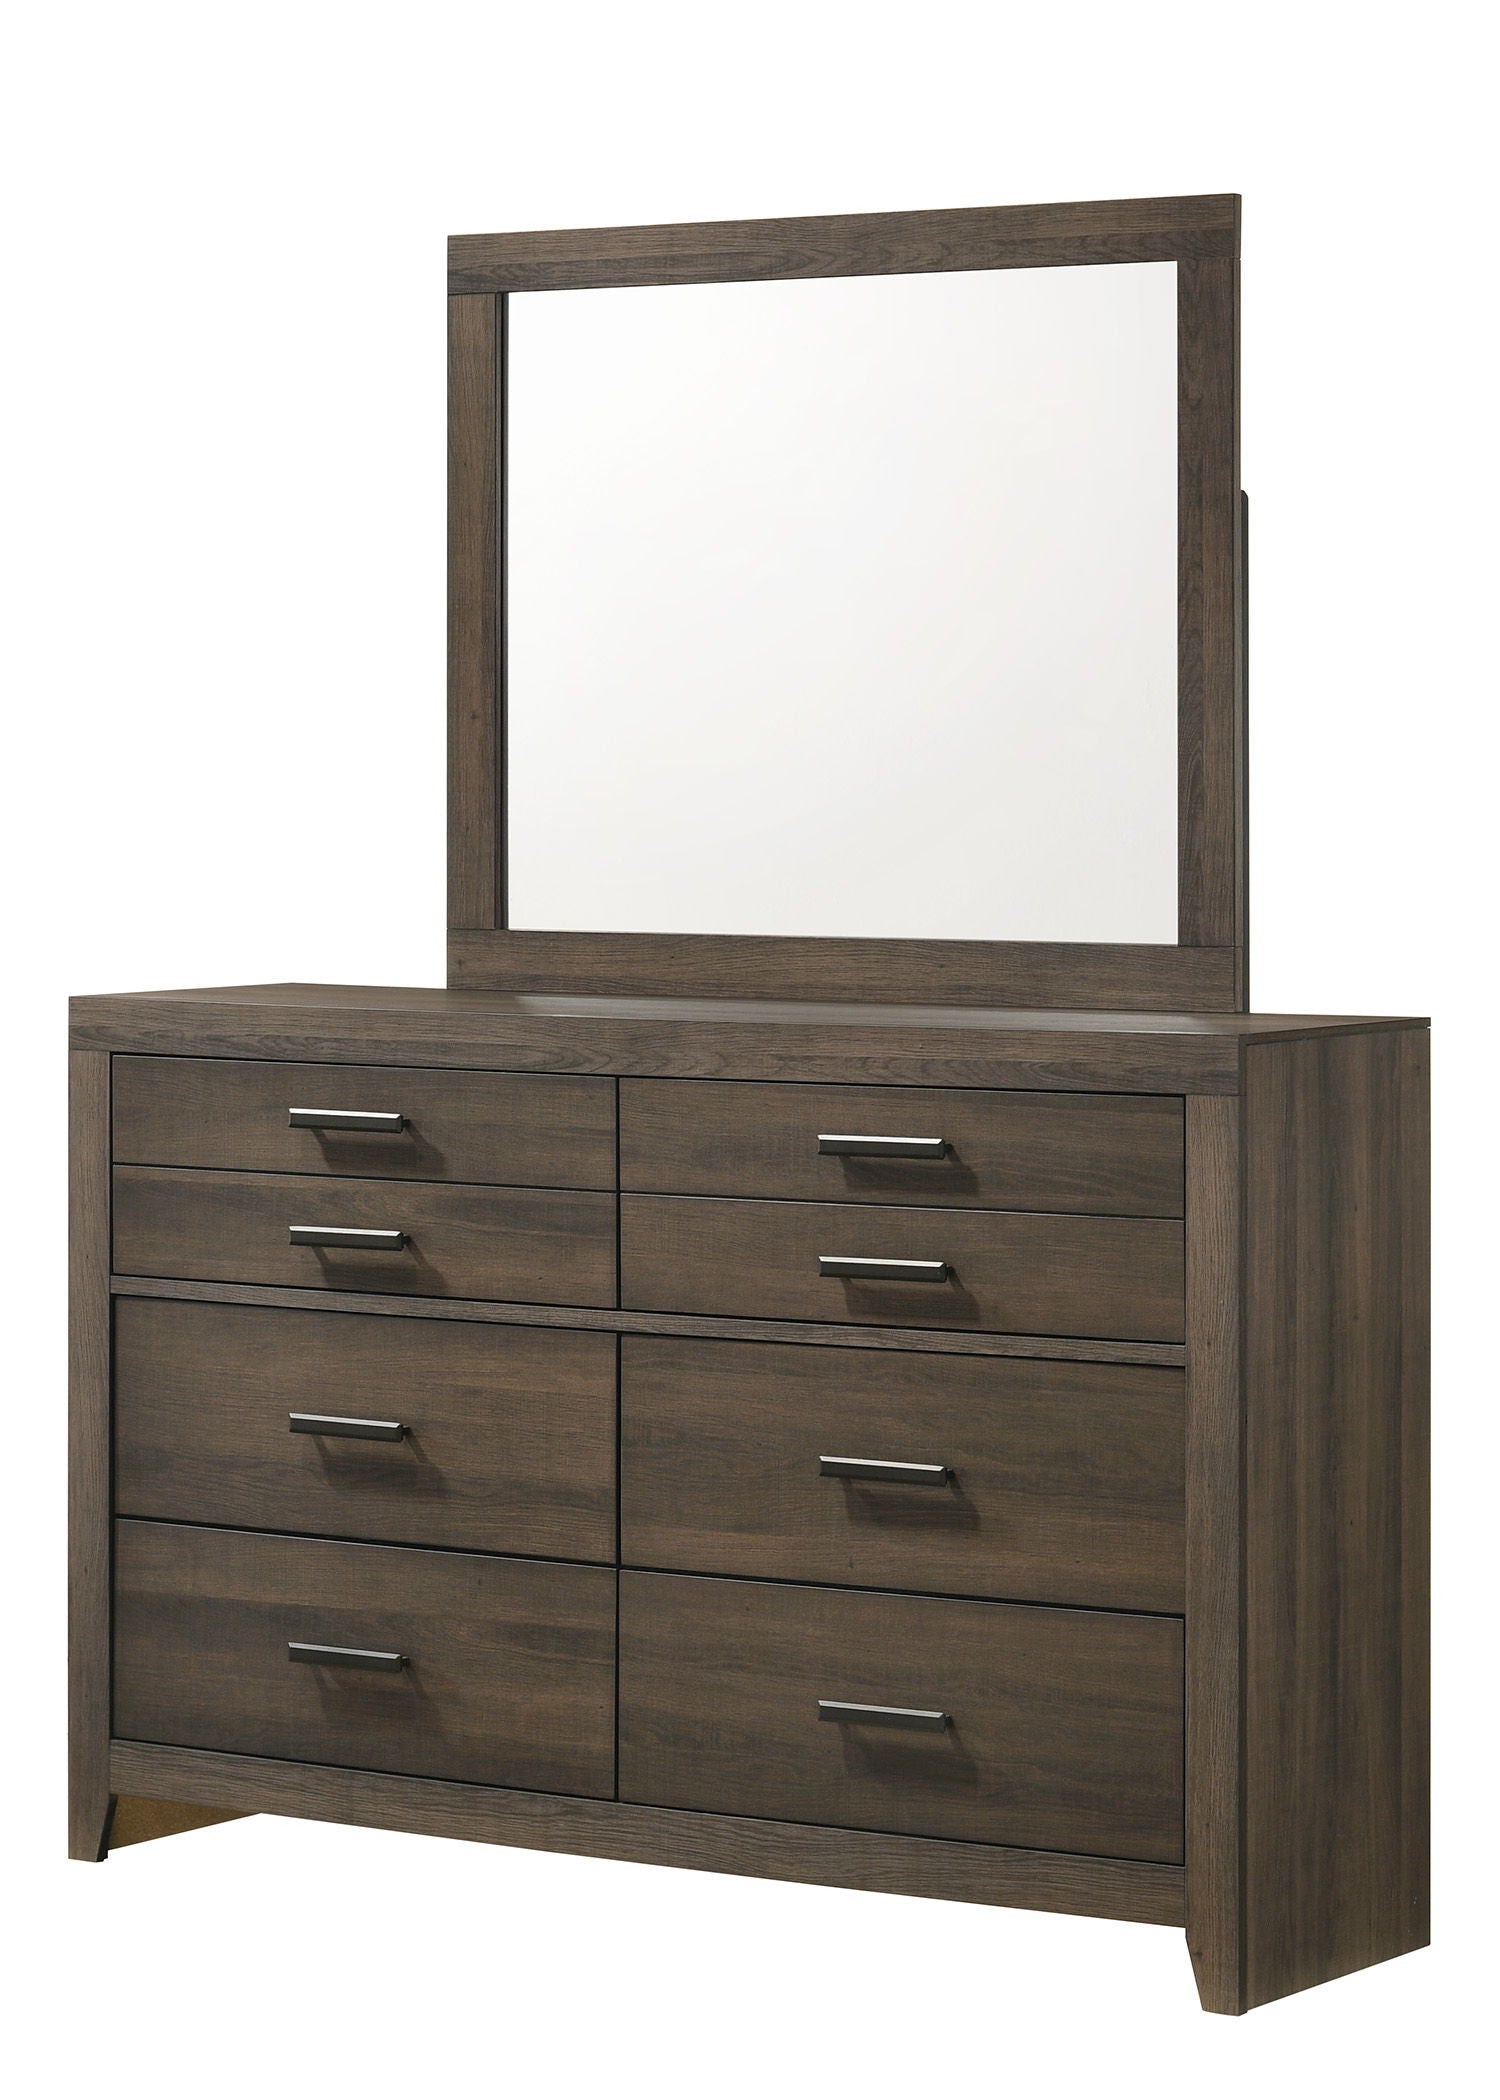 Marley - Dresser, Mirror